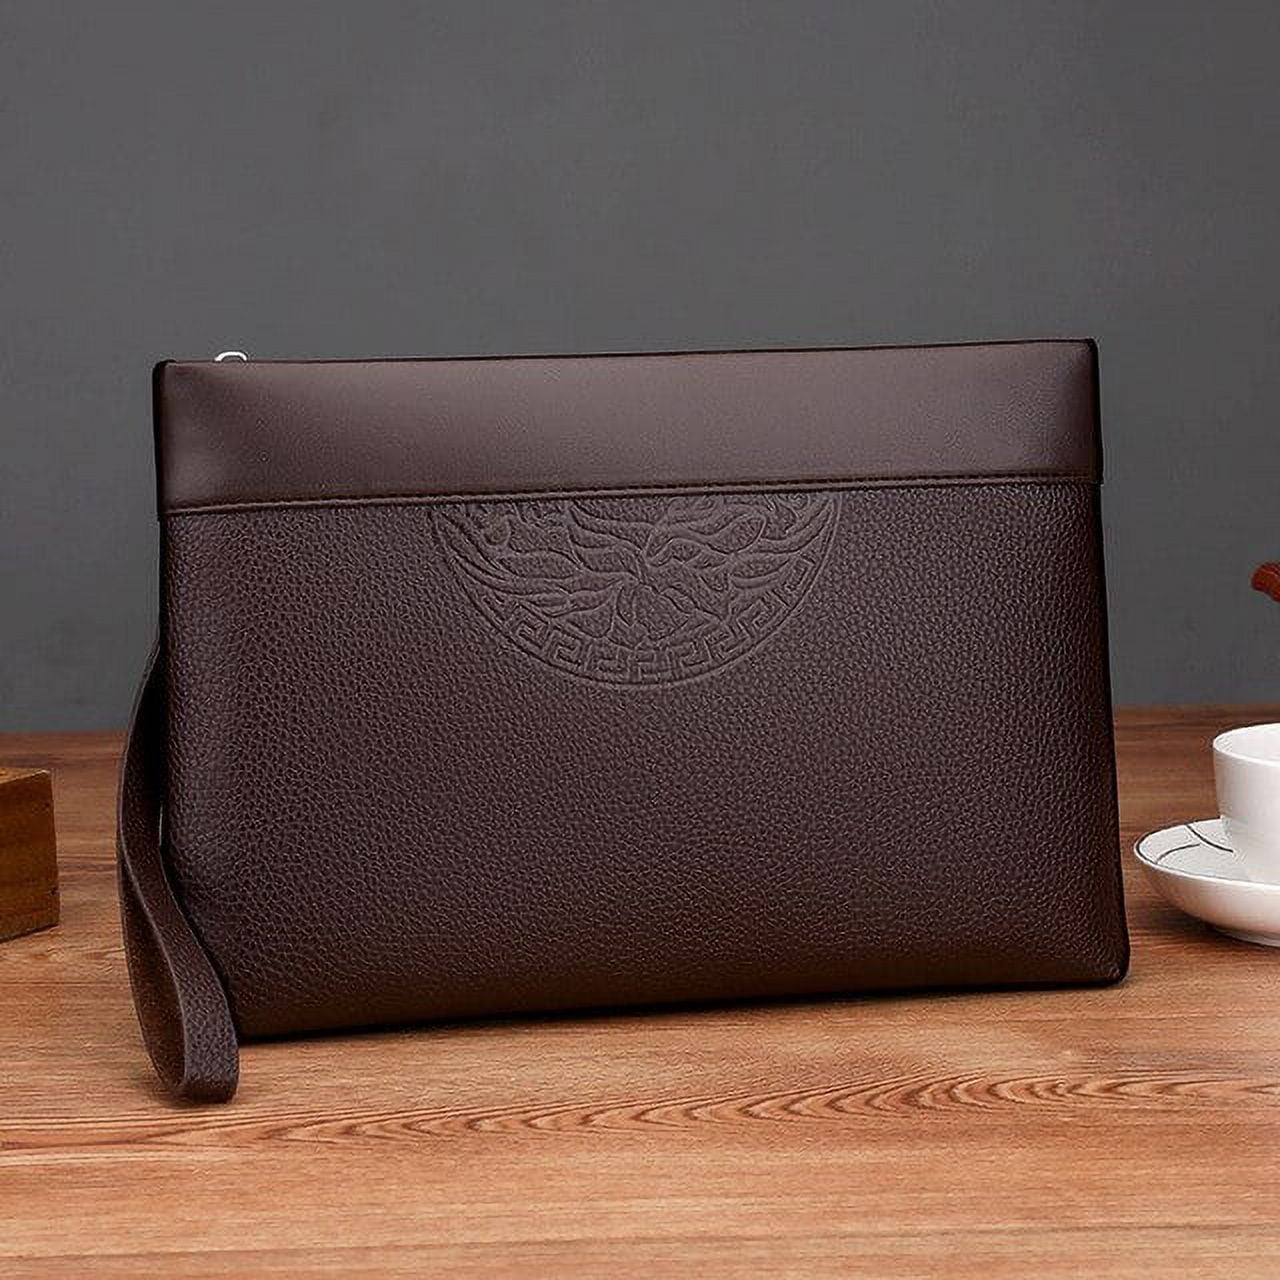 New Men's Clutch Bag Wallet Soft Leather Black Brown Large